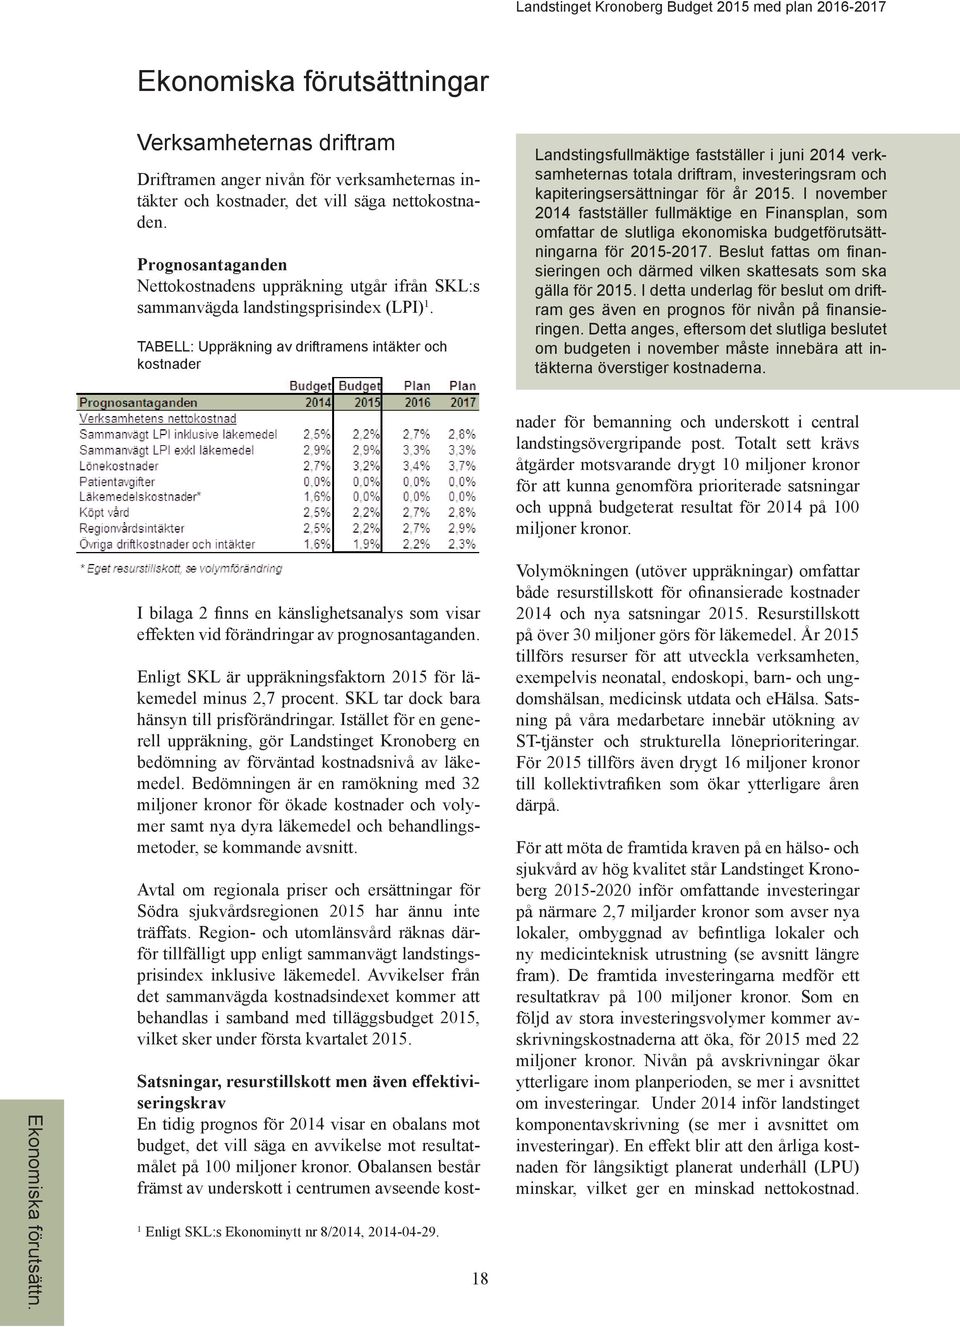 TABELL: Uppräkning av driftramens intäkter och kostnader Landstingsfullmäktige fastställer i juni 2014 verksamheternas totala driftram, investeringsram och kapiteringsersättningar för år 2015.